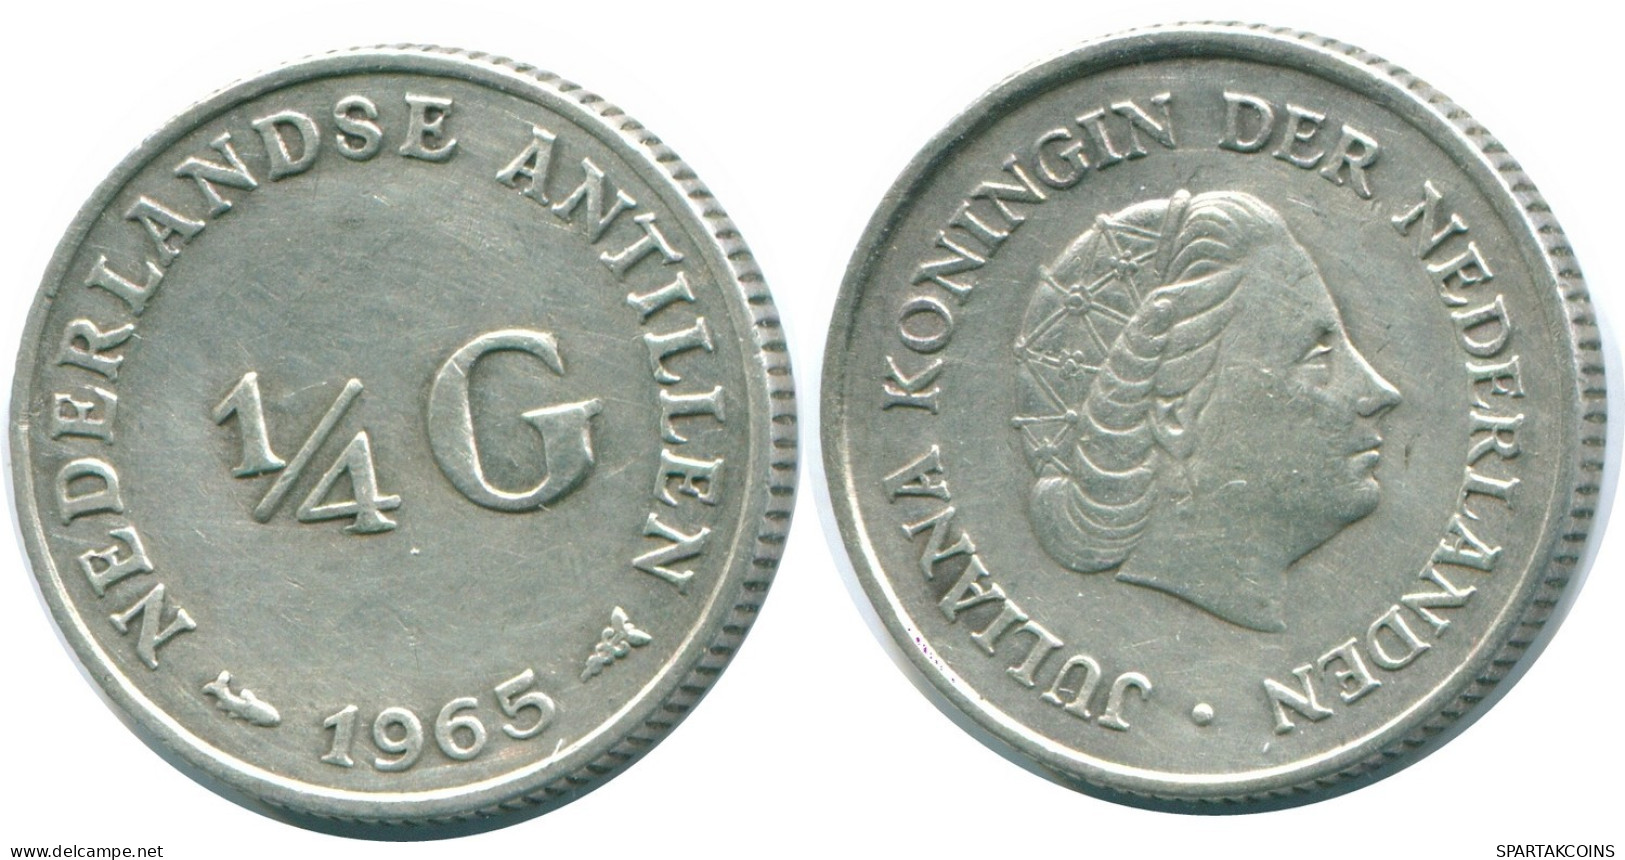 1/4 GULDEN 1965 NIEDERLÄNDISCHE ANTILLEN SILBER Koloniale Münze #NL11322.4.D.A - Antille Olandesi